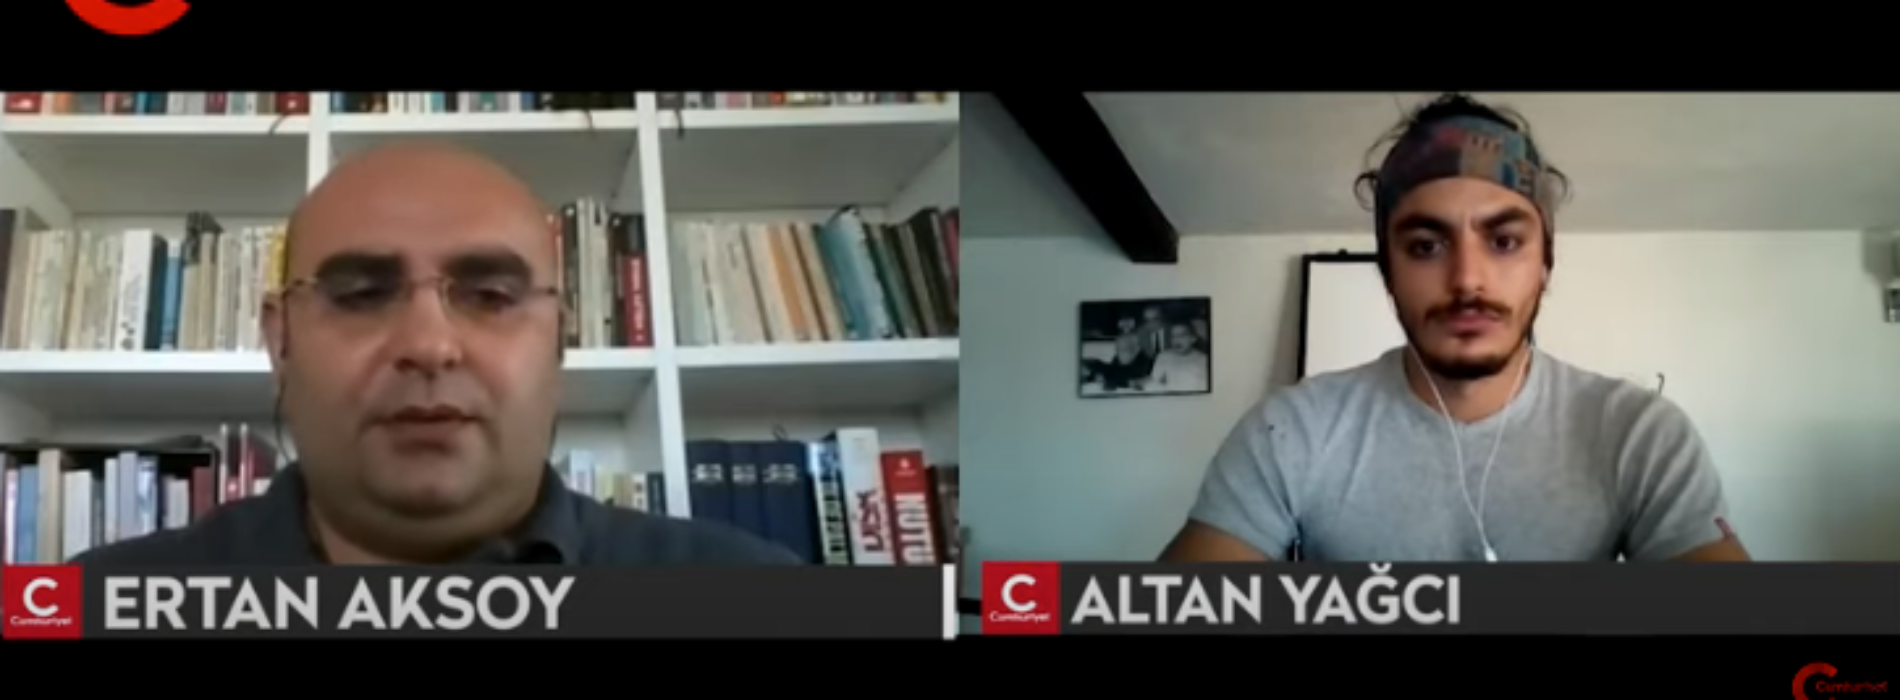 Aksoy Araştırma Kurucusu Ertan Aksoy Cumhuriyet TV’nin Konuğuydu